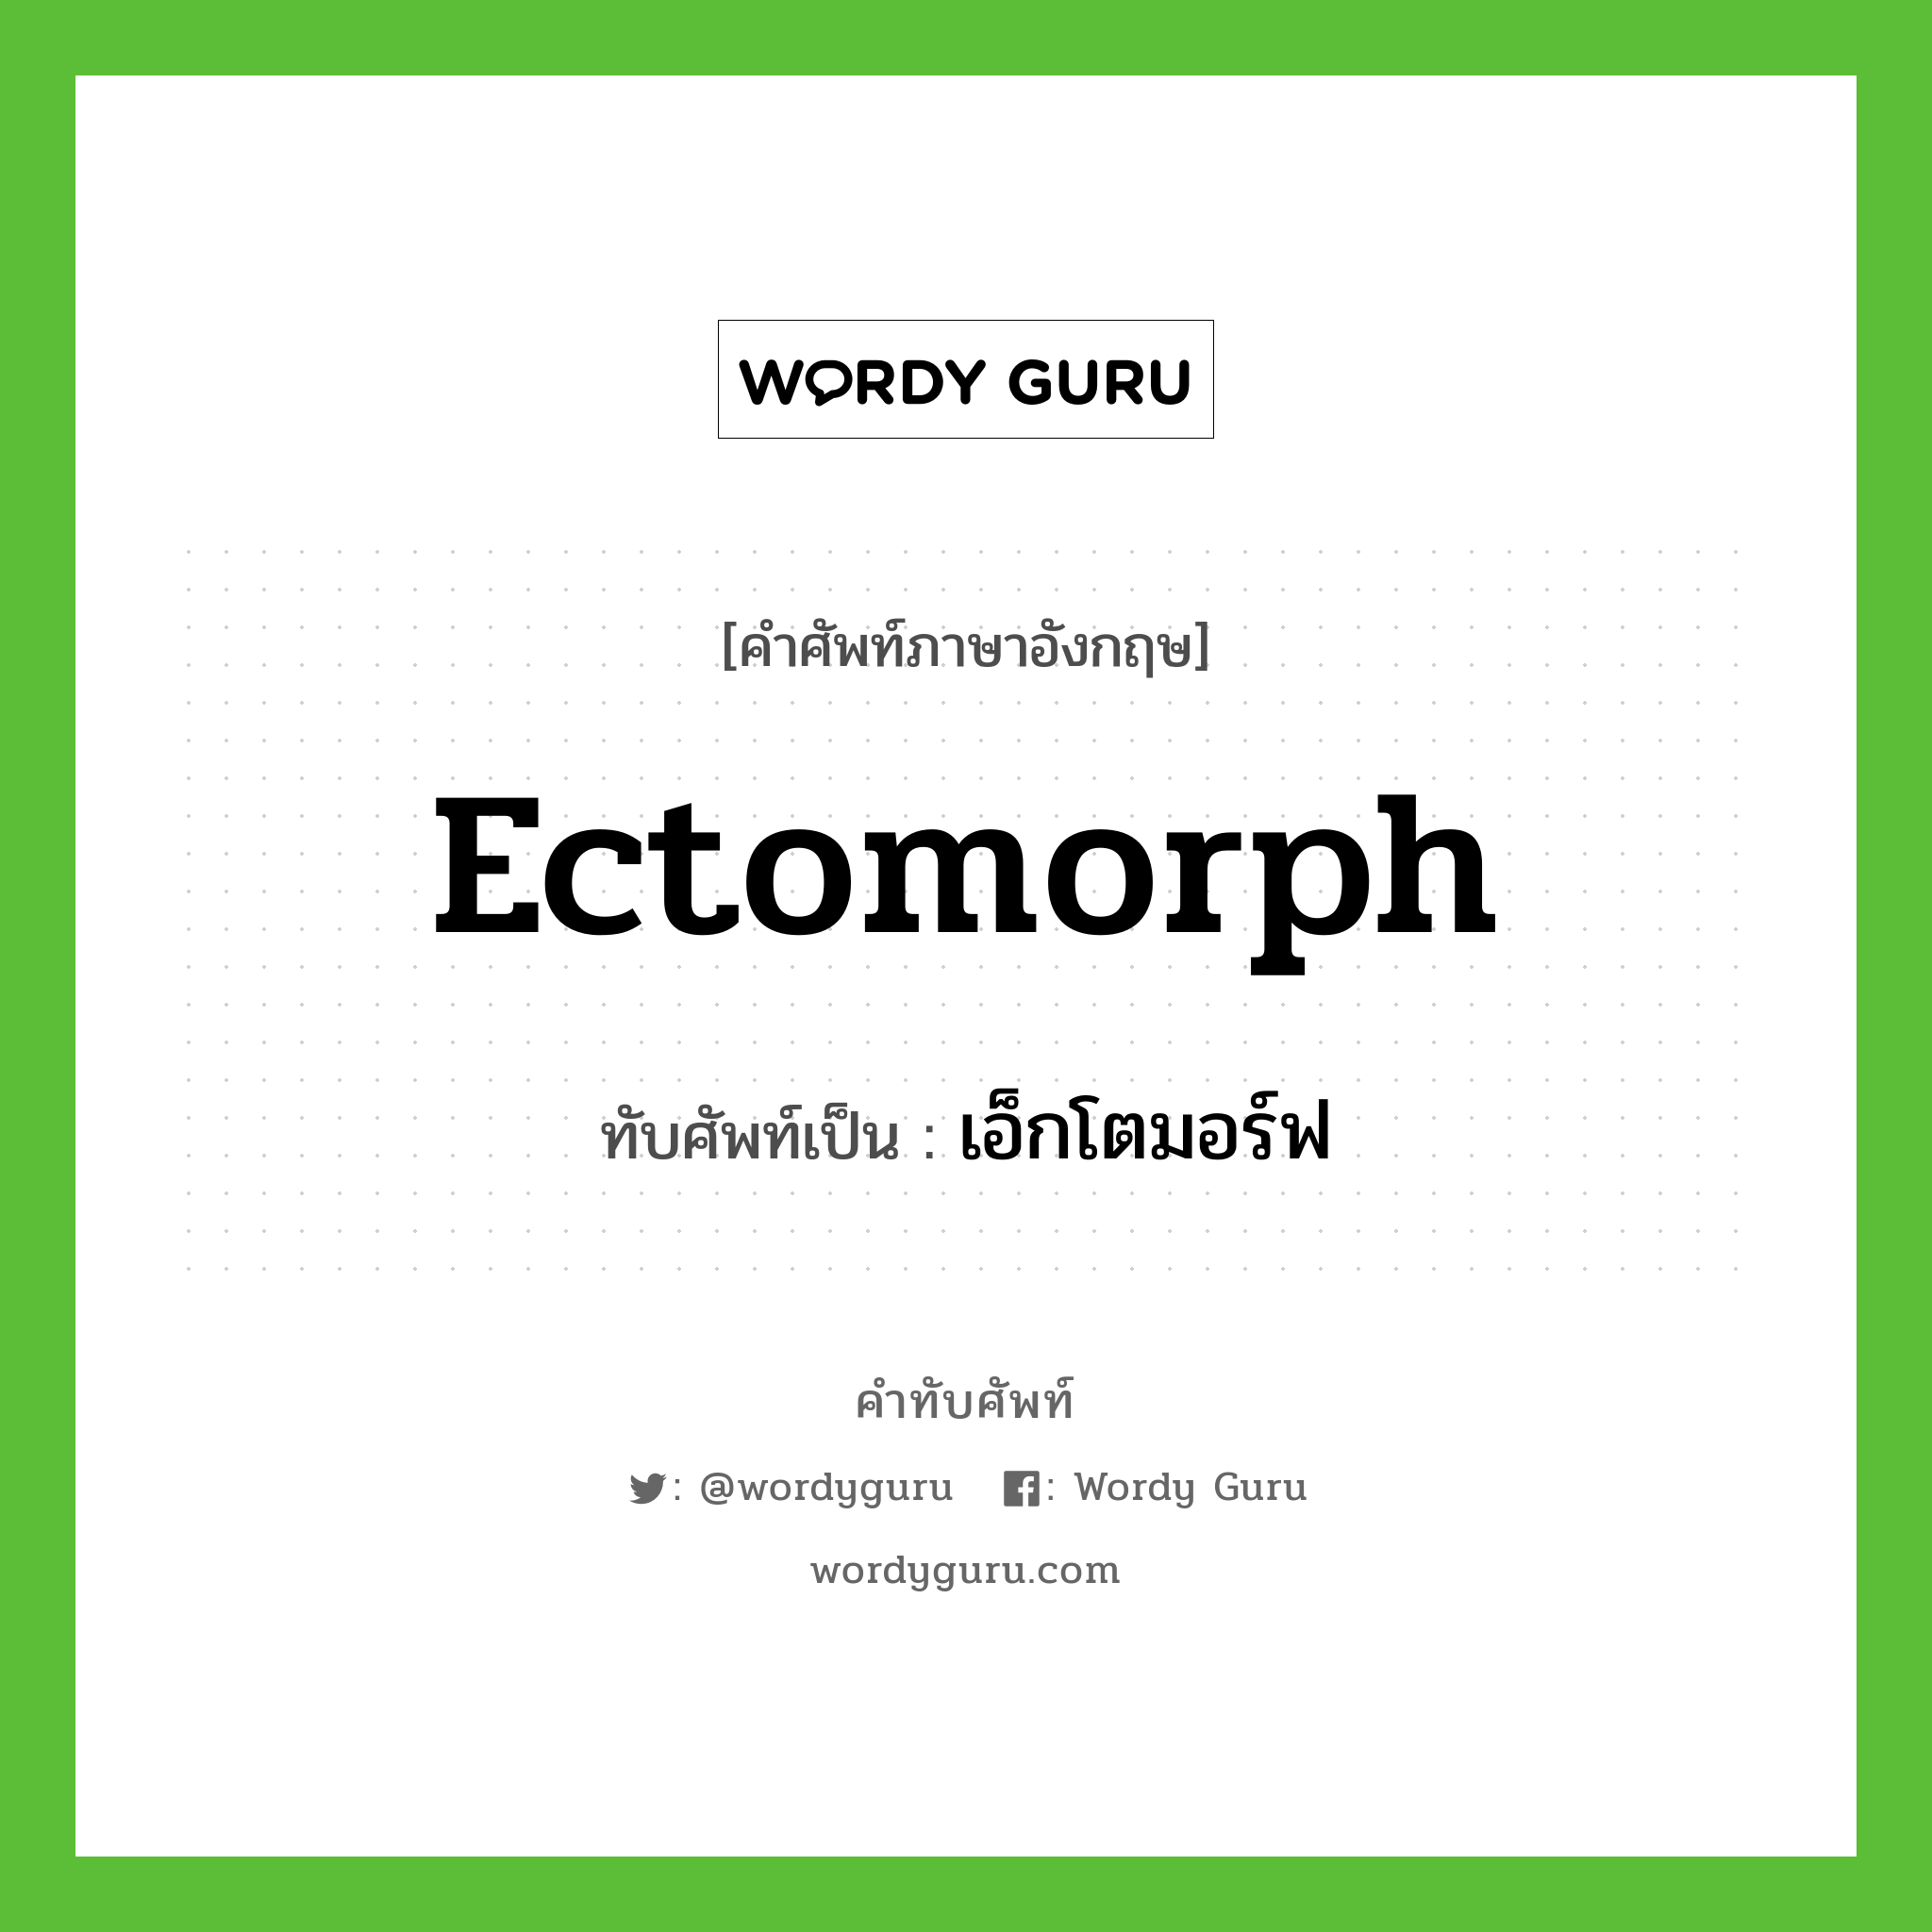 Ectomorph เขียนเป็นคำไทยว่าอะไร?, คำศัพท์ภาษาอังกฤษ Ectomorph ทับศัพท์เป็น เอ็กโตมอร์ฟ